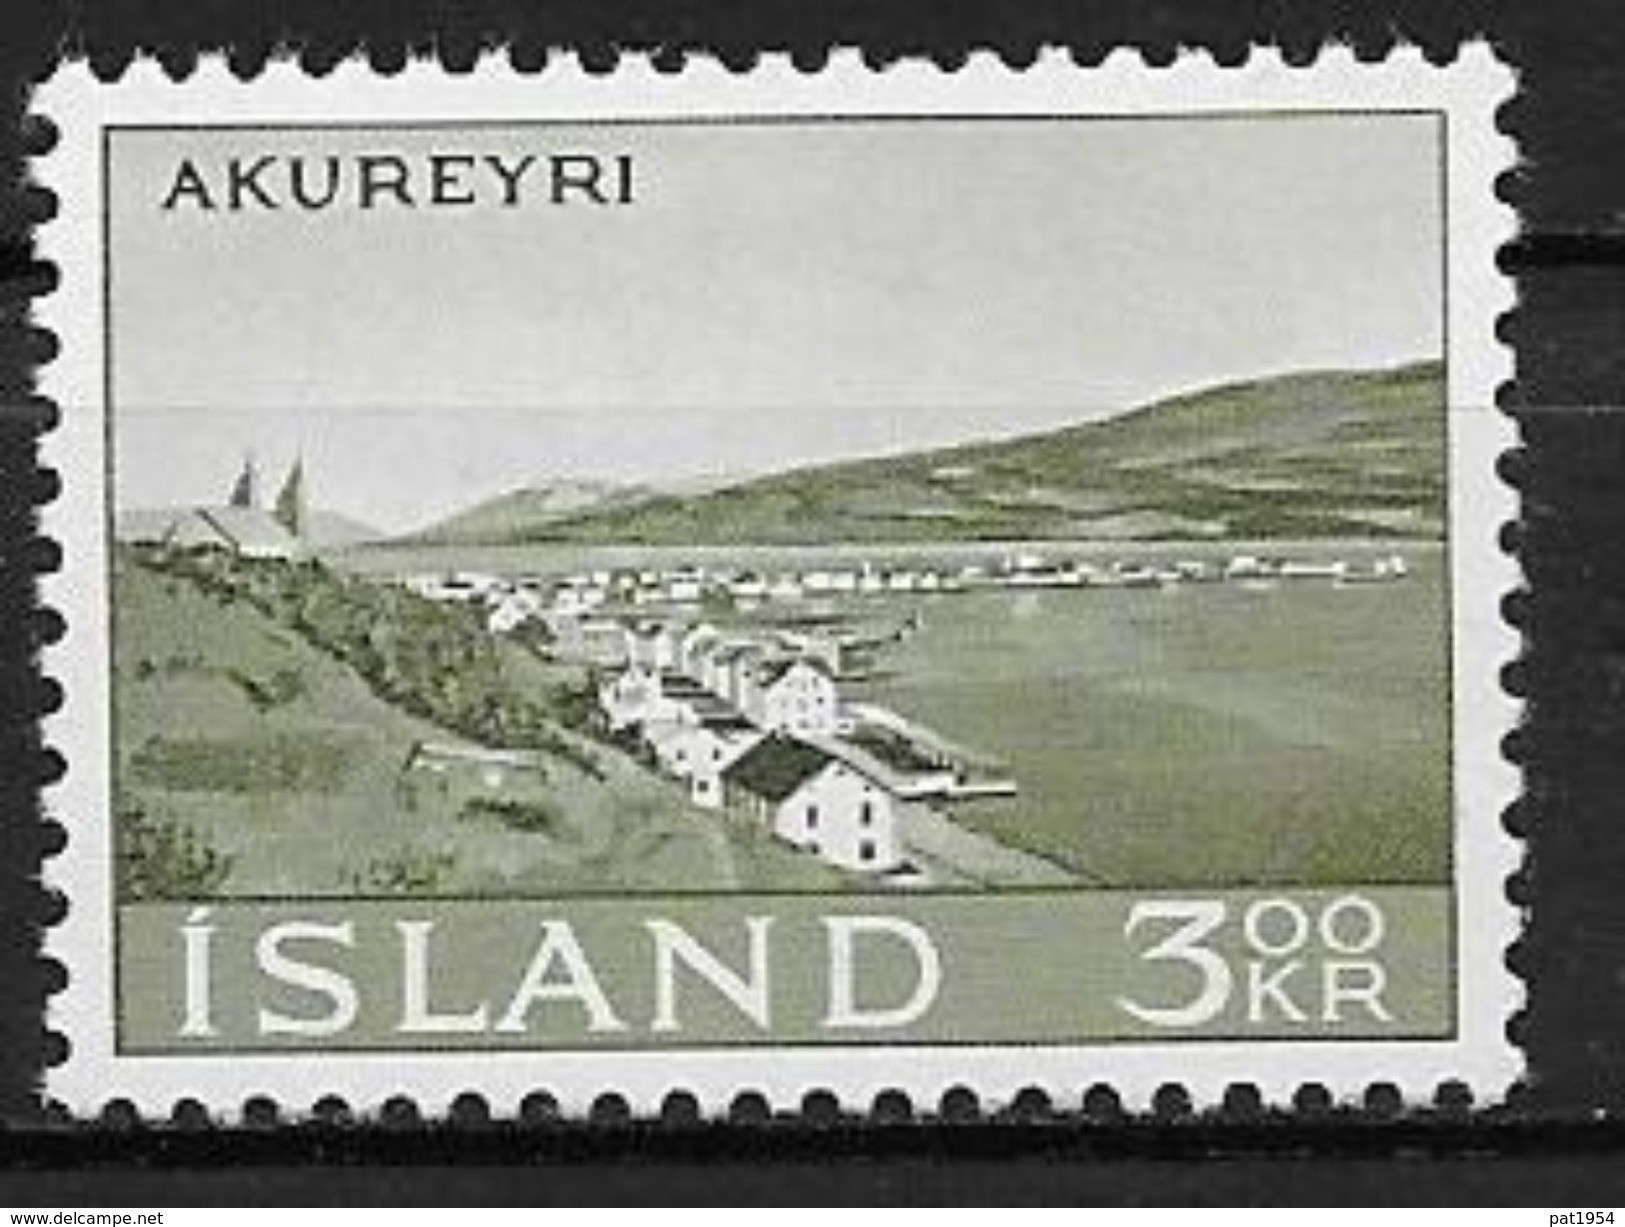 Islande 1963 N° 327  Neuf ** MNH Akureyri - Neufs